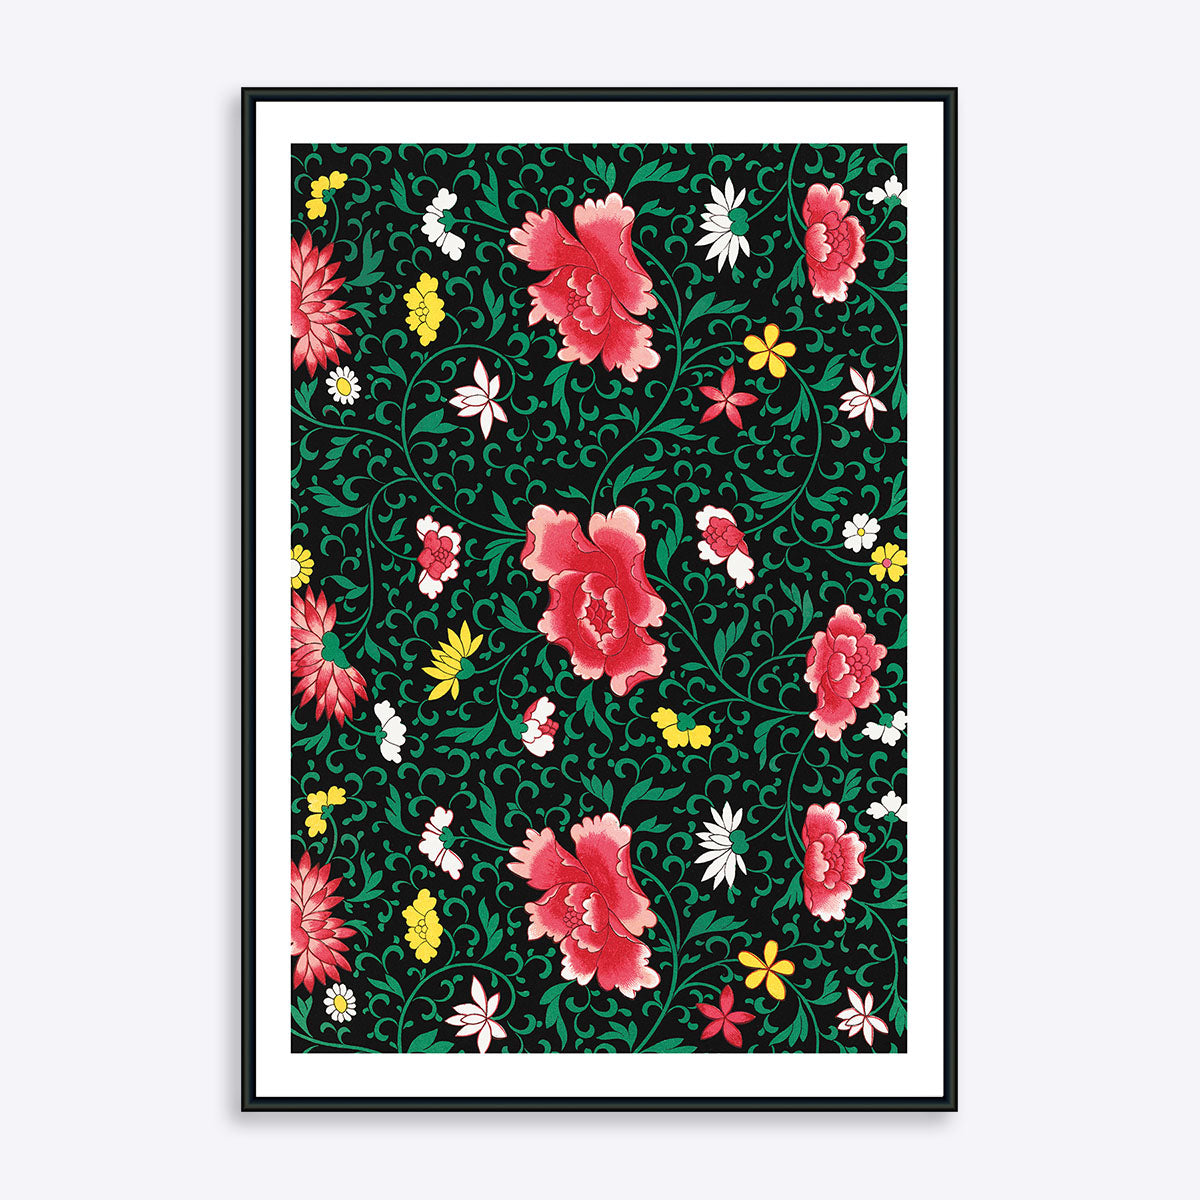 Plakat med hvide, gule og røde blomster